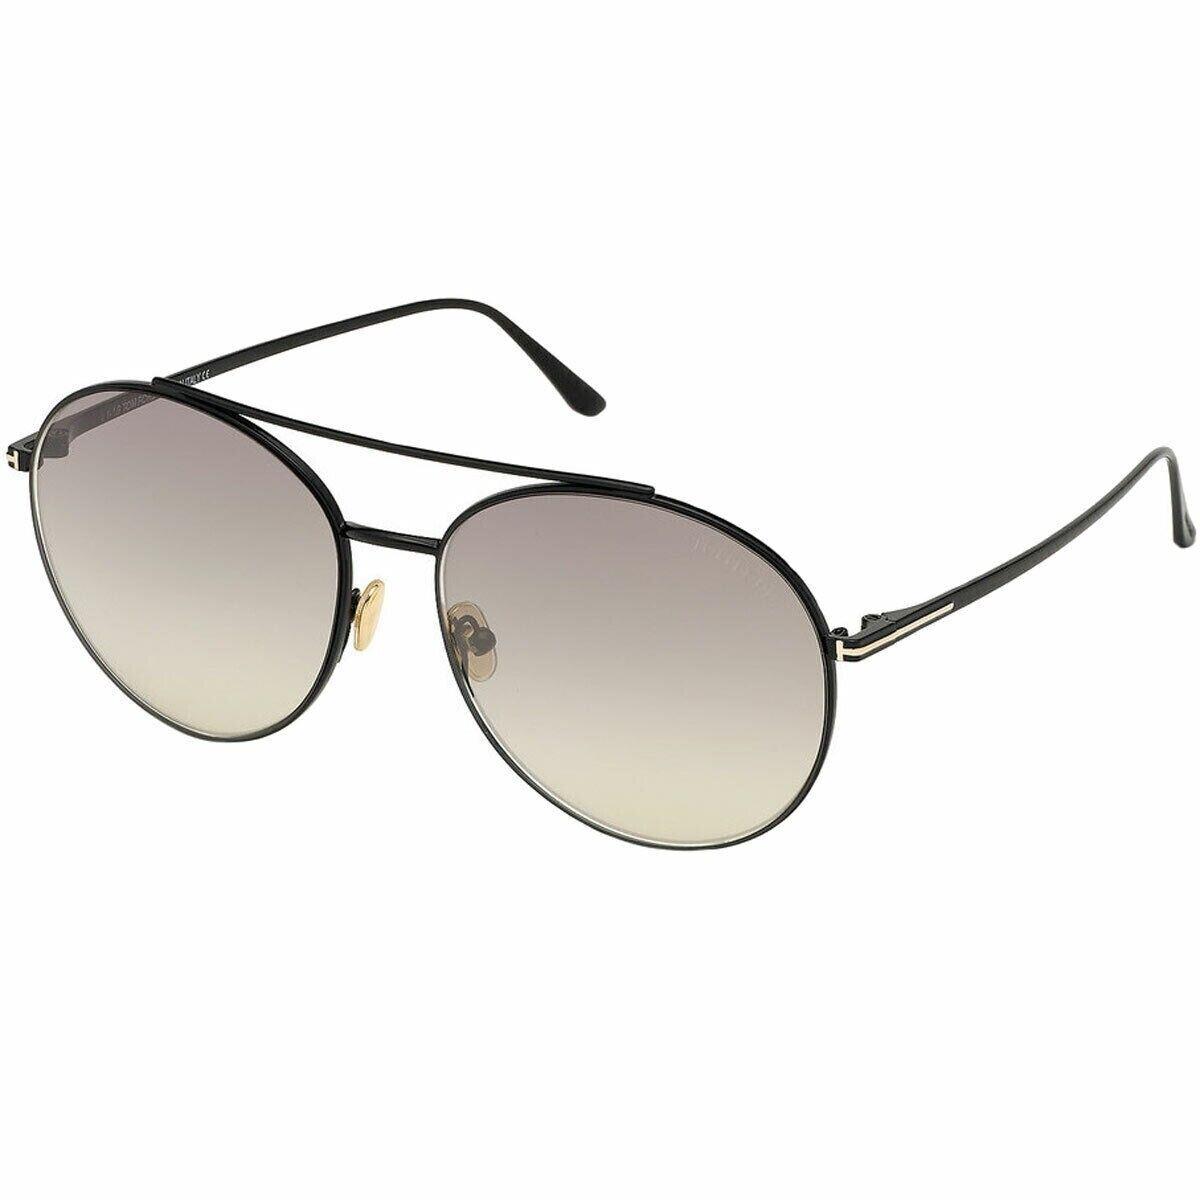 Tom Ford Women`s Sunglasses Cleo Black Metal Frame Gray Mirror Lens FT0757 5901C - Shiny Black Frame, Gray Lens